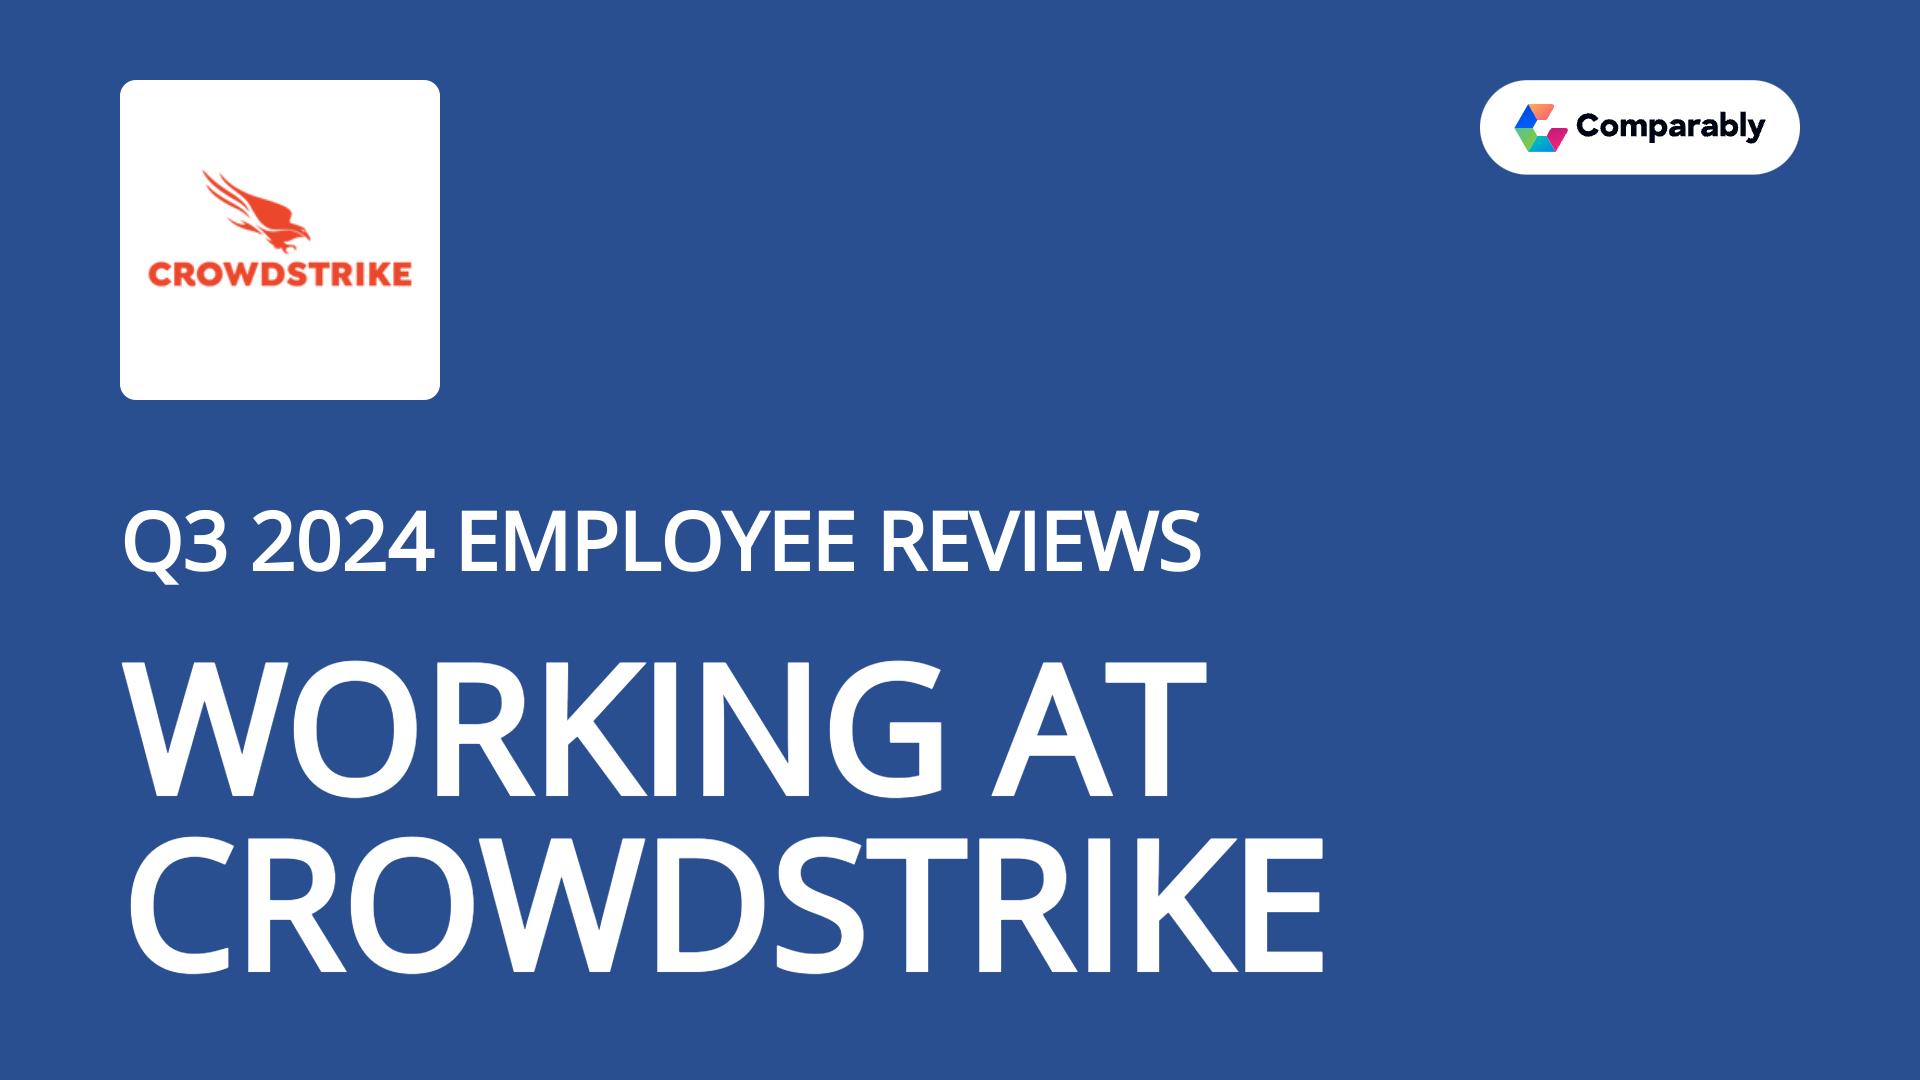 crowdstrike employee reviews